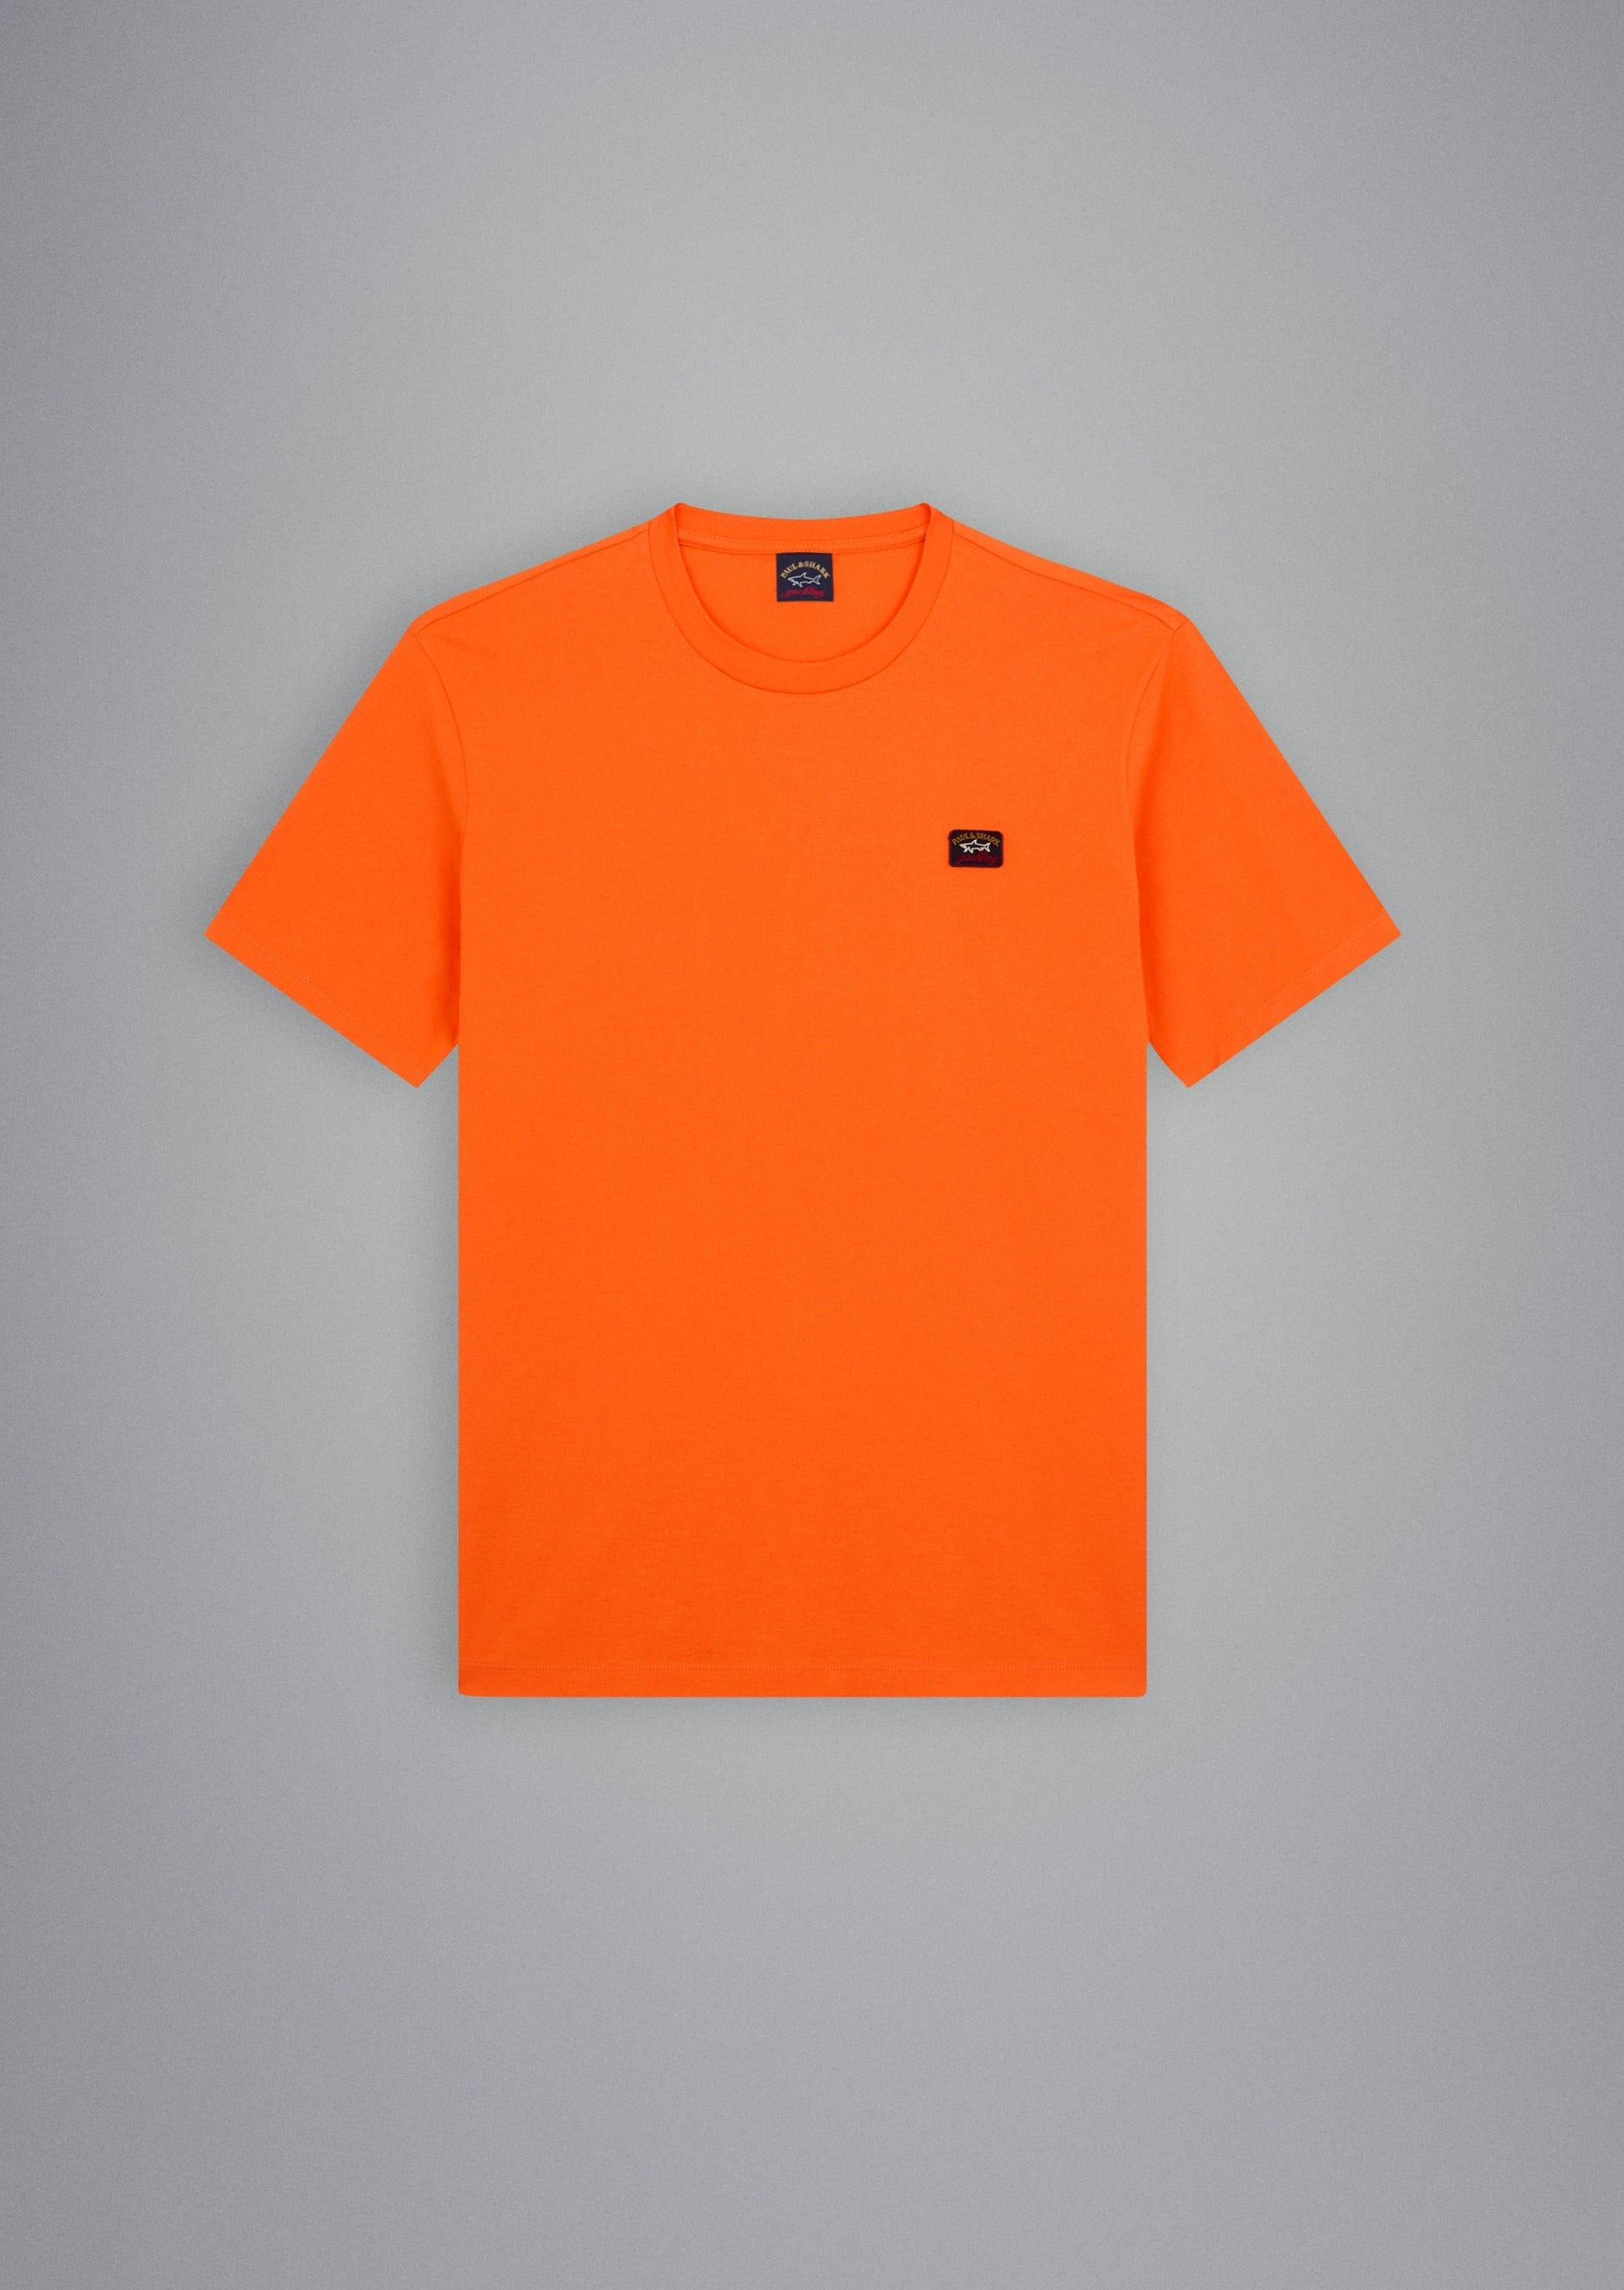 T-shirt Paul & Shark orange 